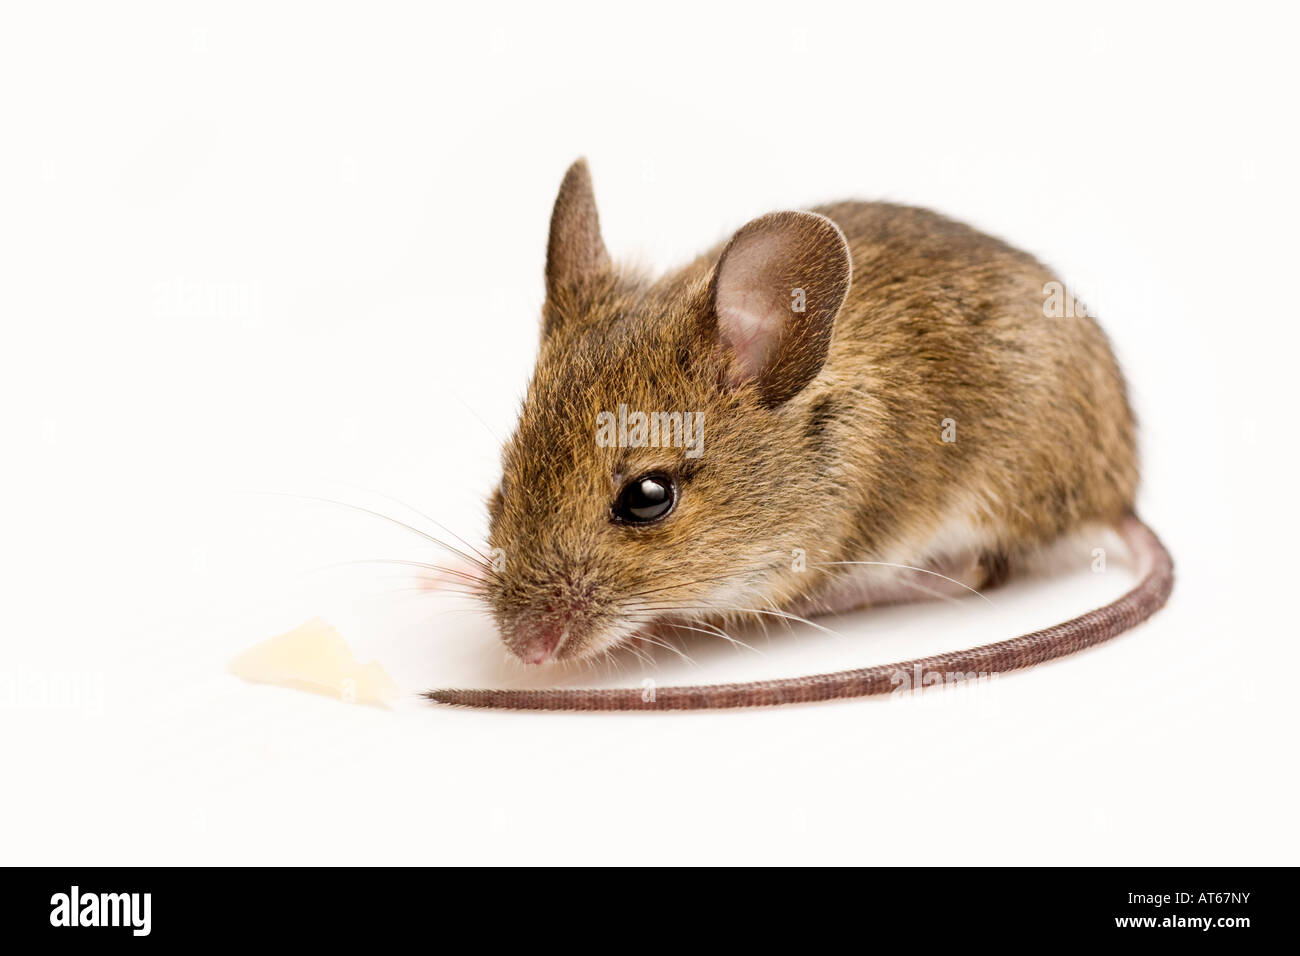 Apodemus sylvaticus, ratón de madera, largas colas de ratón de campo Foto de stock